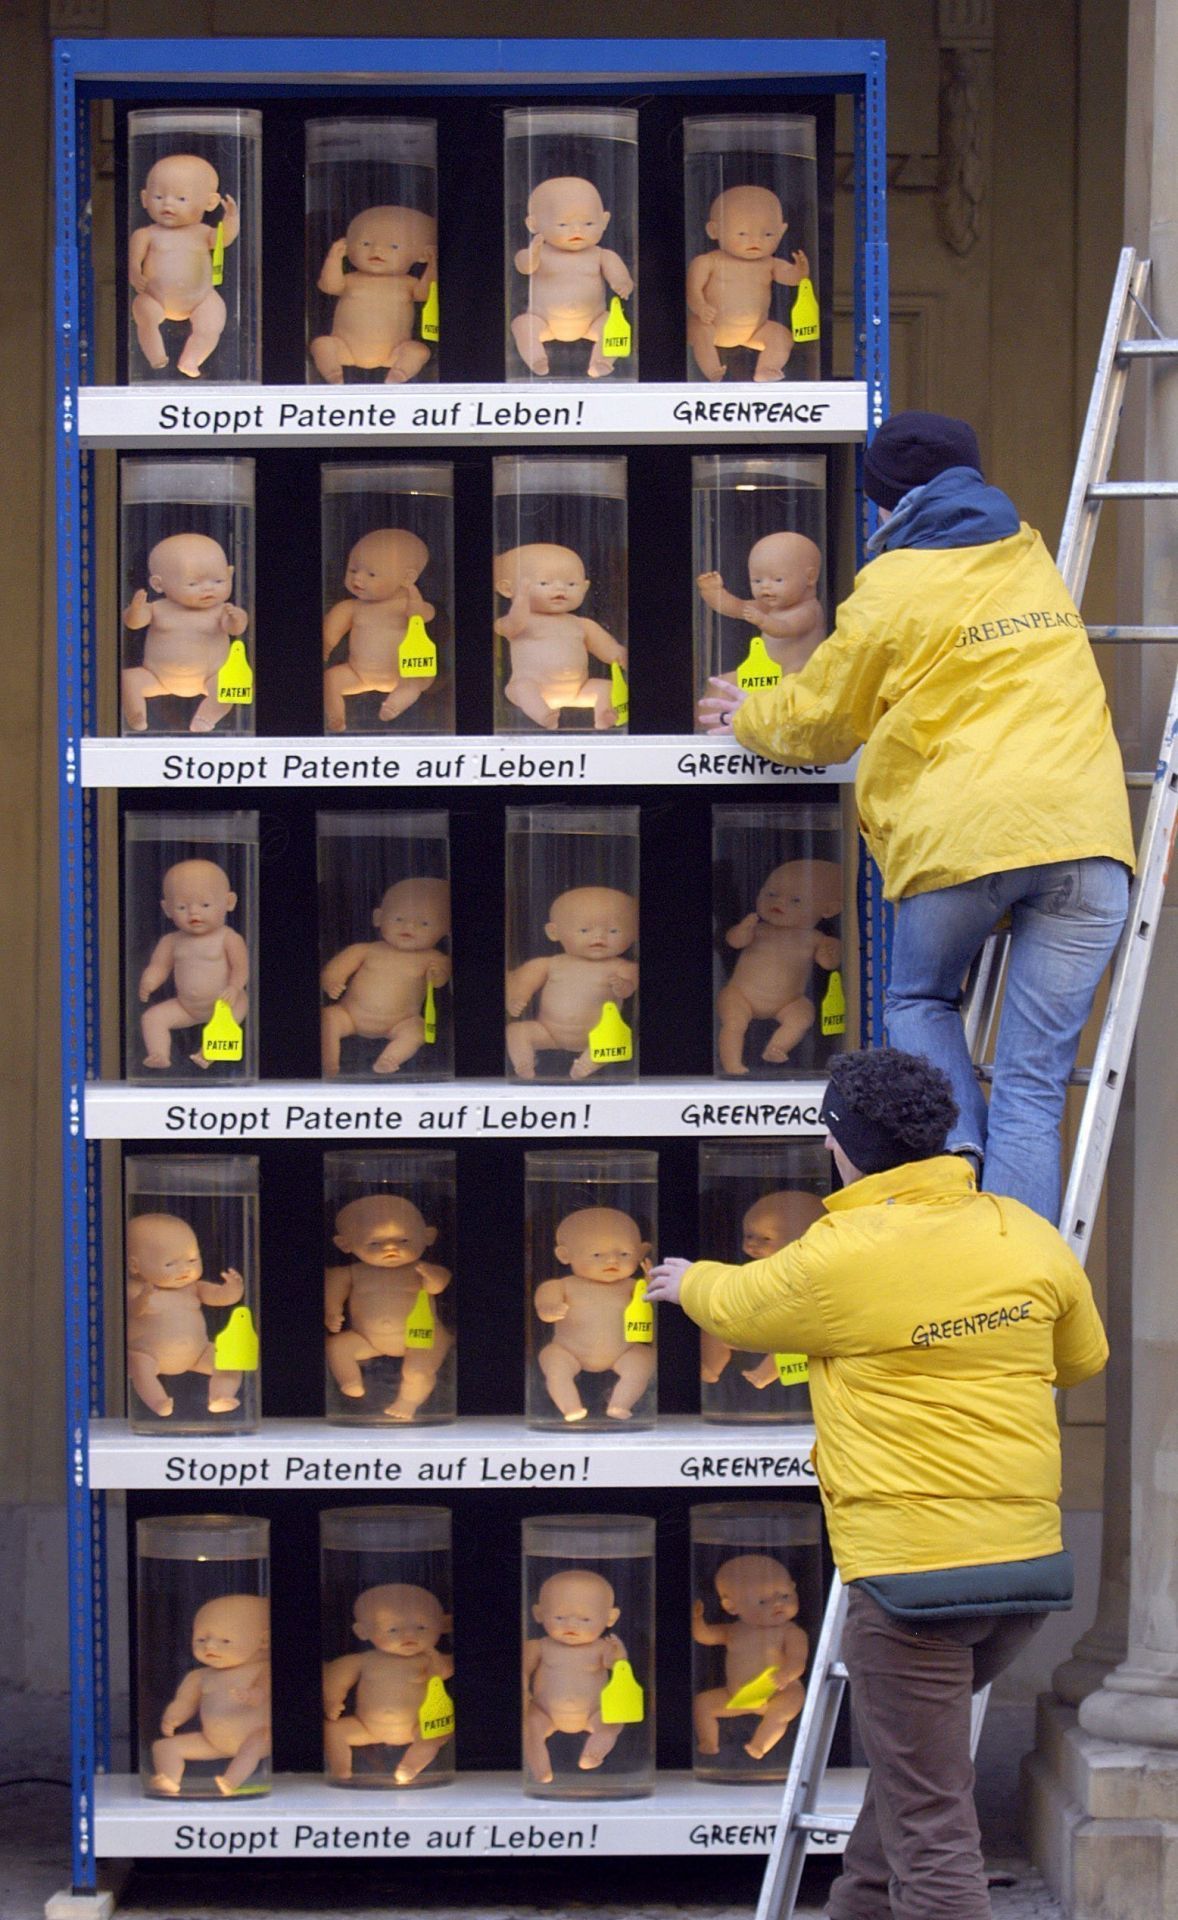 2003 stellte Greenpeace Babypuppen in Gläsern vor das Bundesjustizministerium. Der Protest richtete sich gegen das Klonen von menschlichen Embryonen.